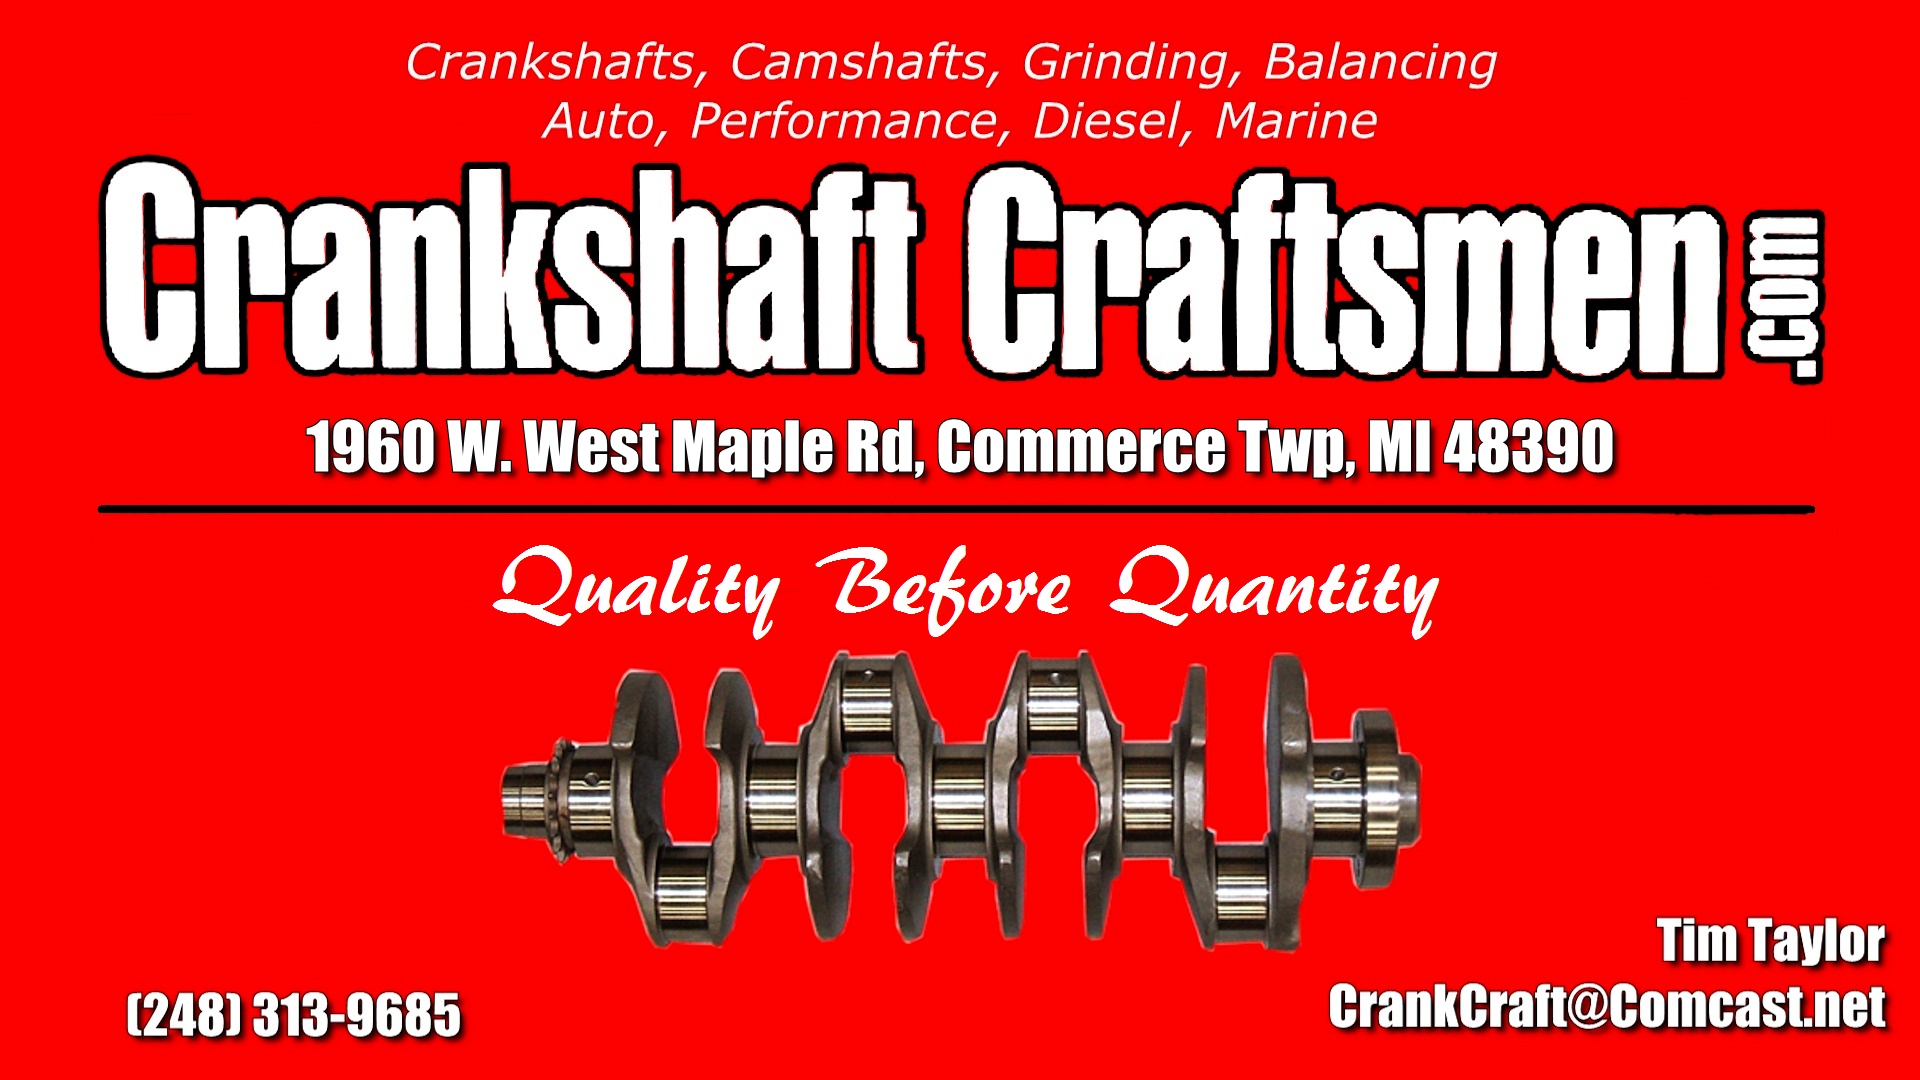 CrankShaft Craftsman